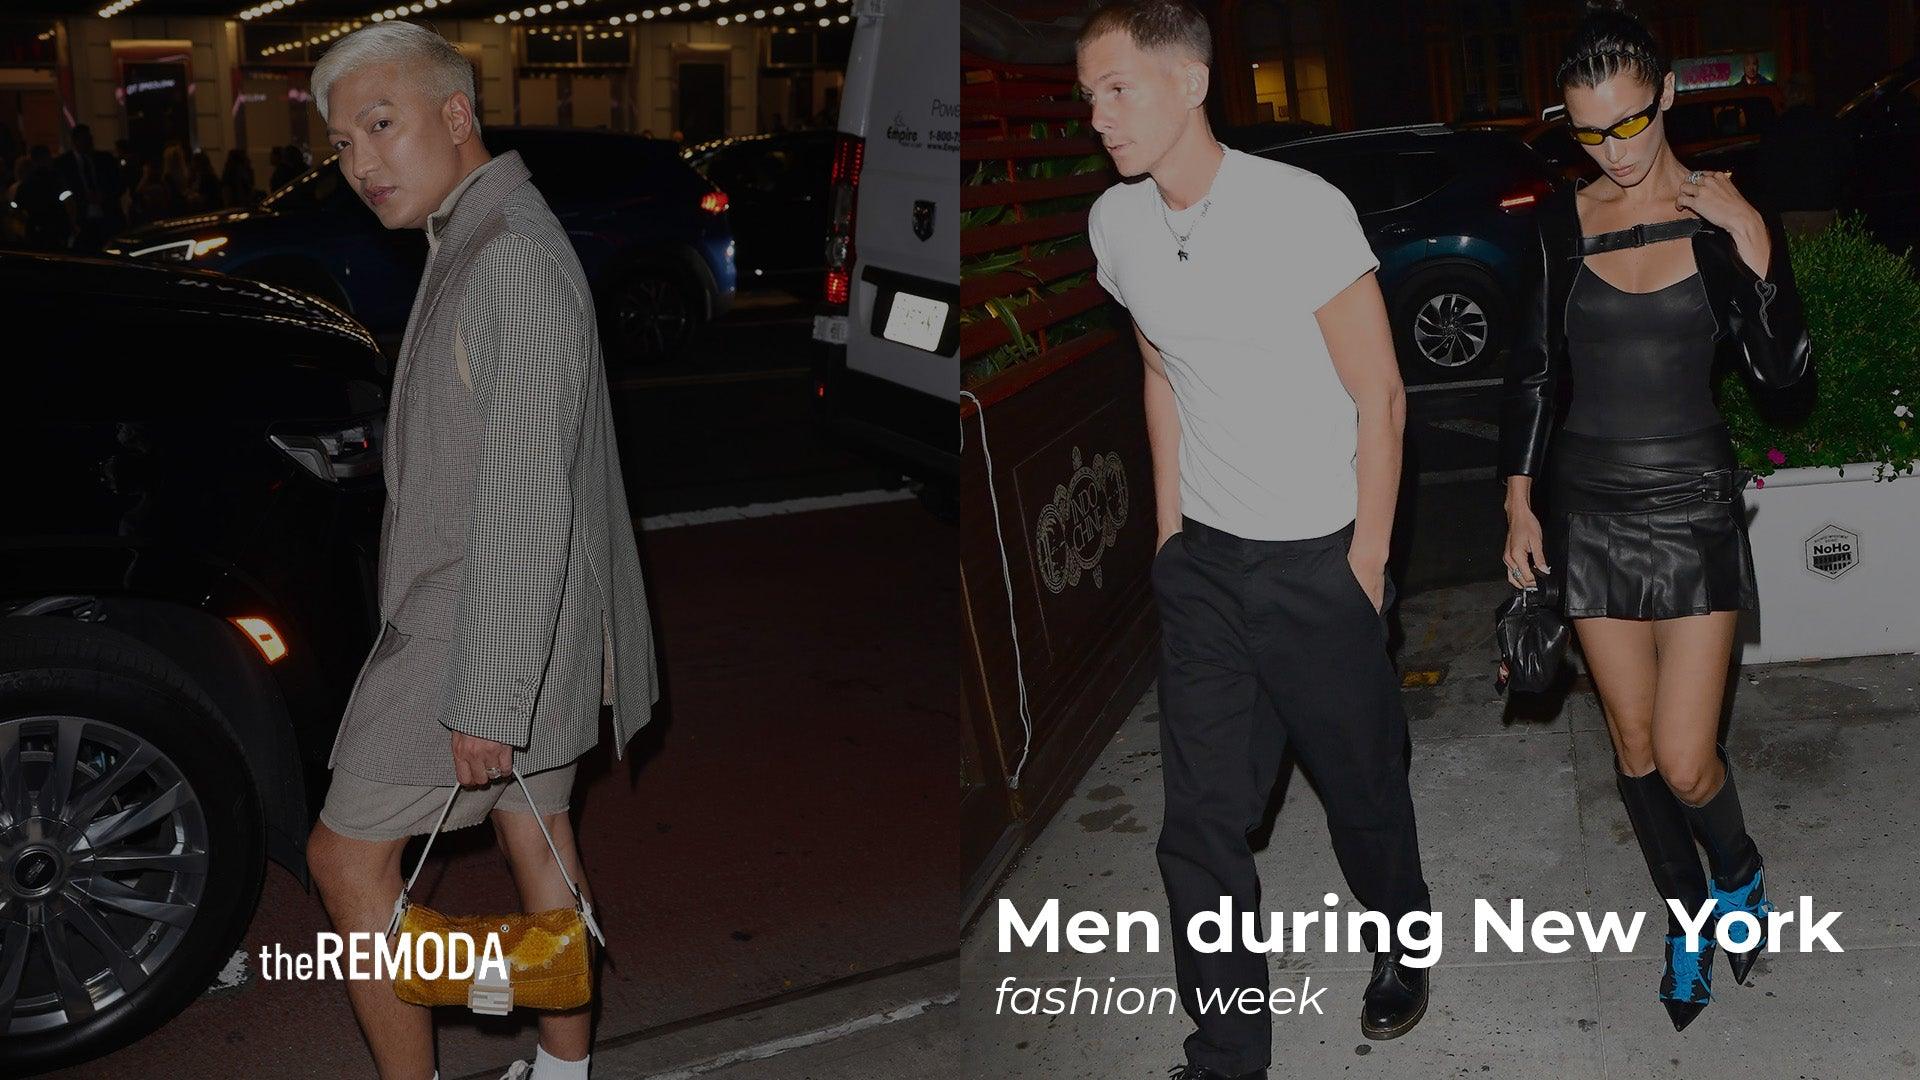 Men during New York fashion week - theREMODA